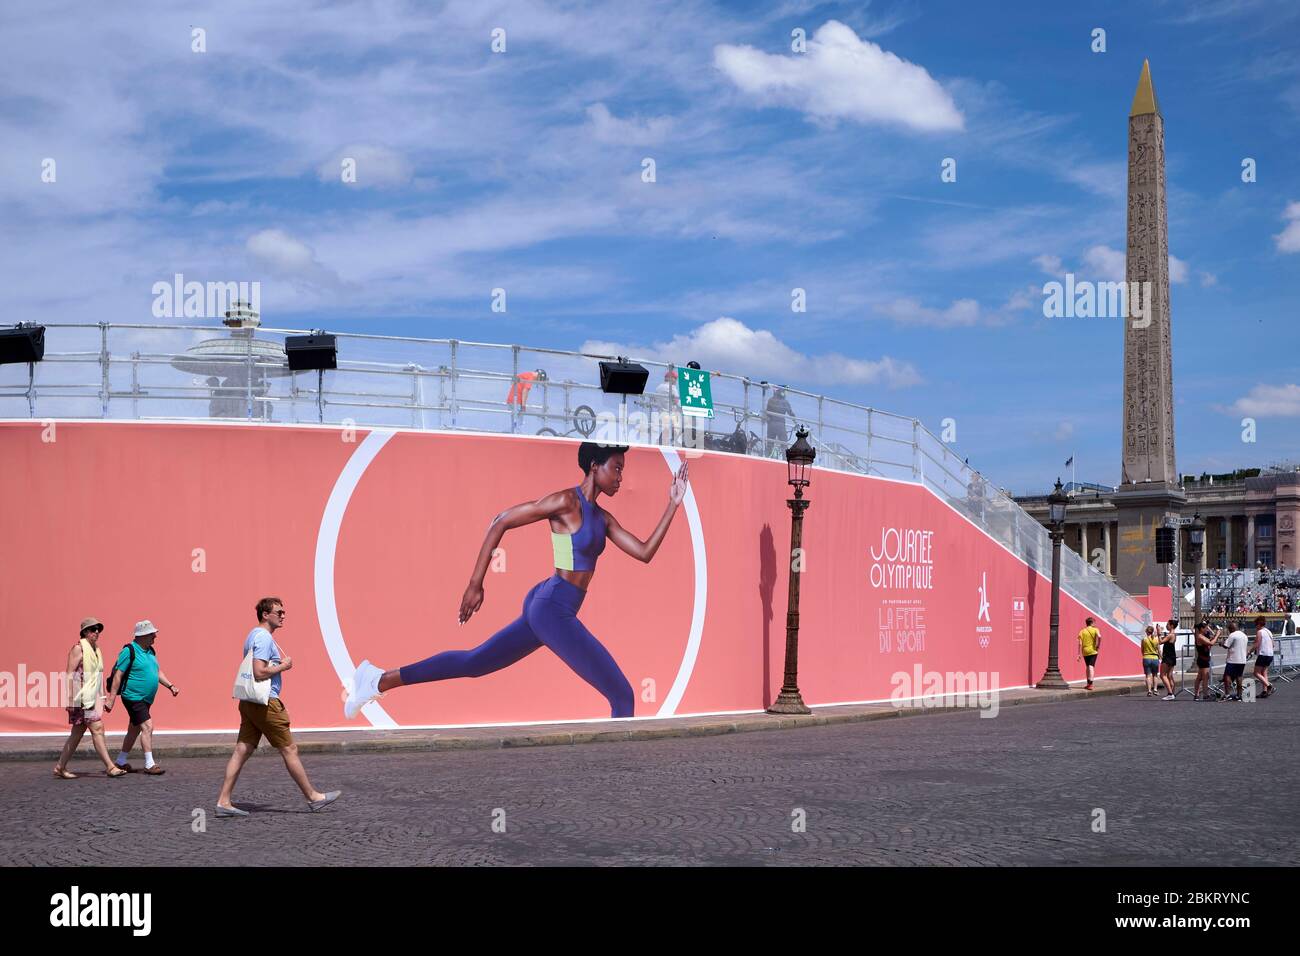 La France, Paris, la place de la Concorde s'est transformée en centre sportif pour la Journée olympique de Paris 2024 Banque D'Images